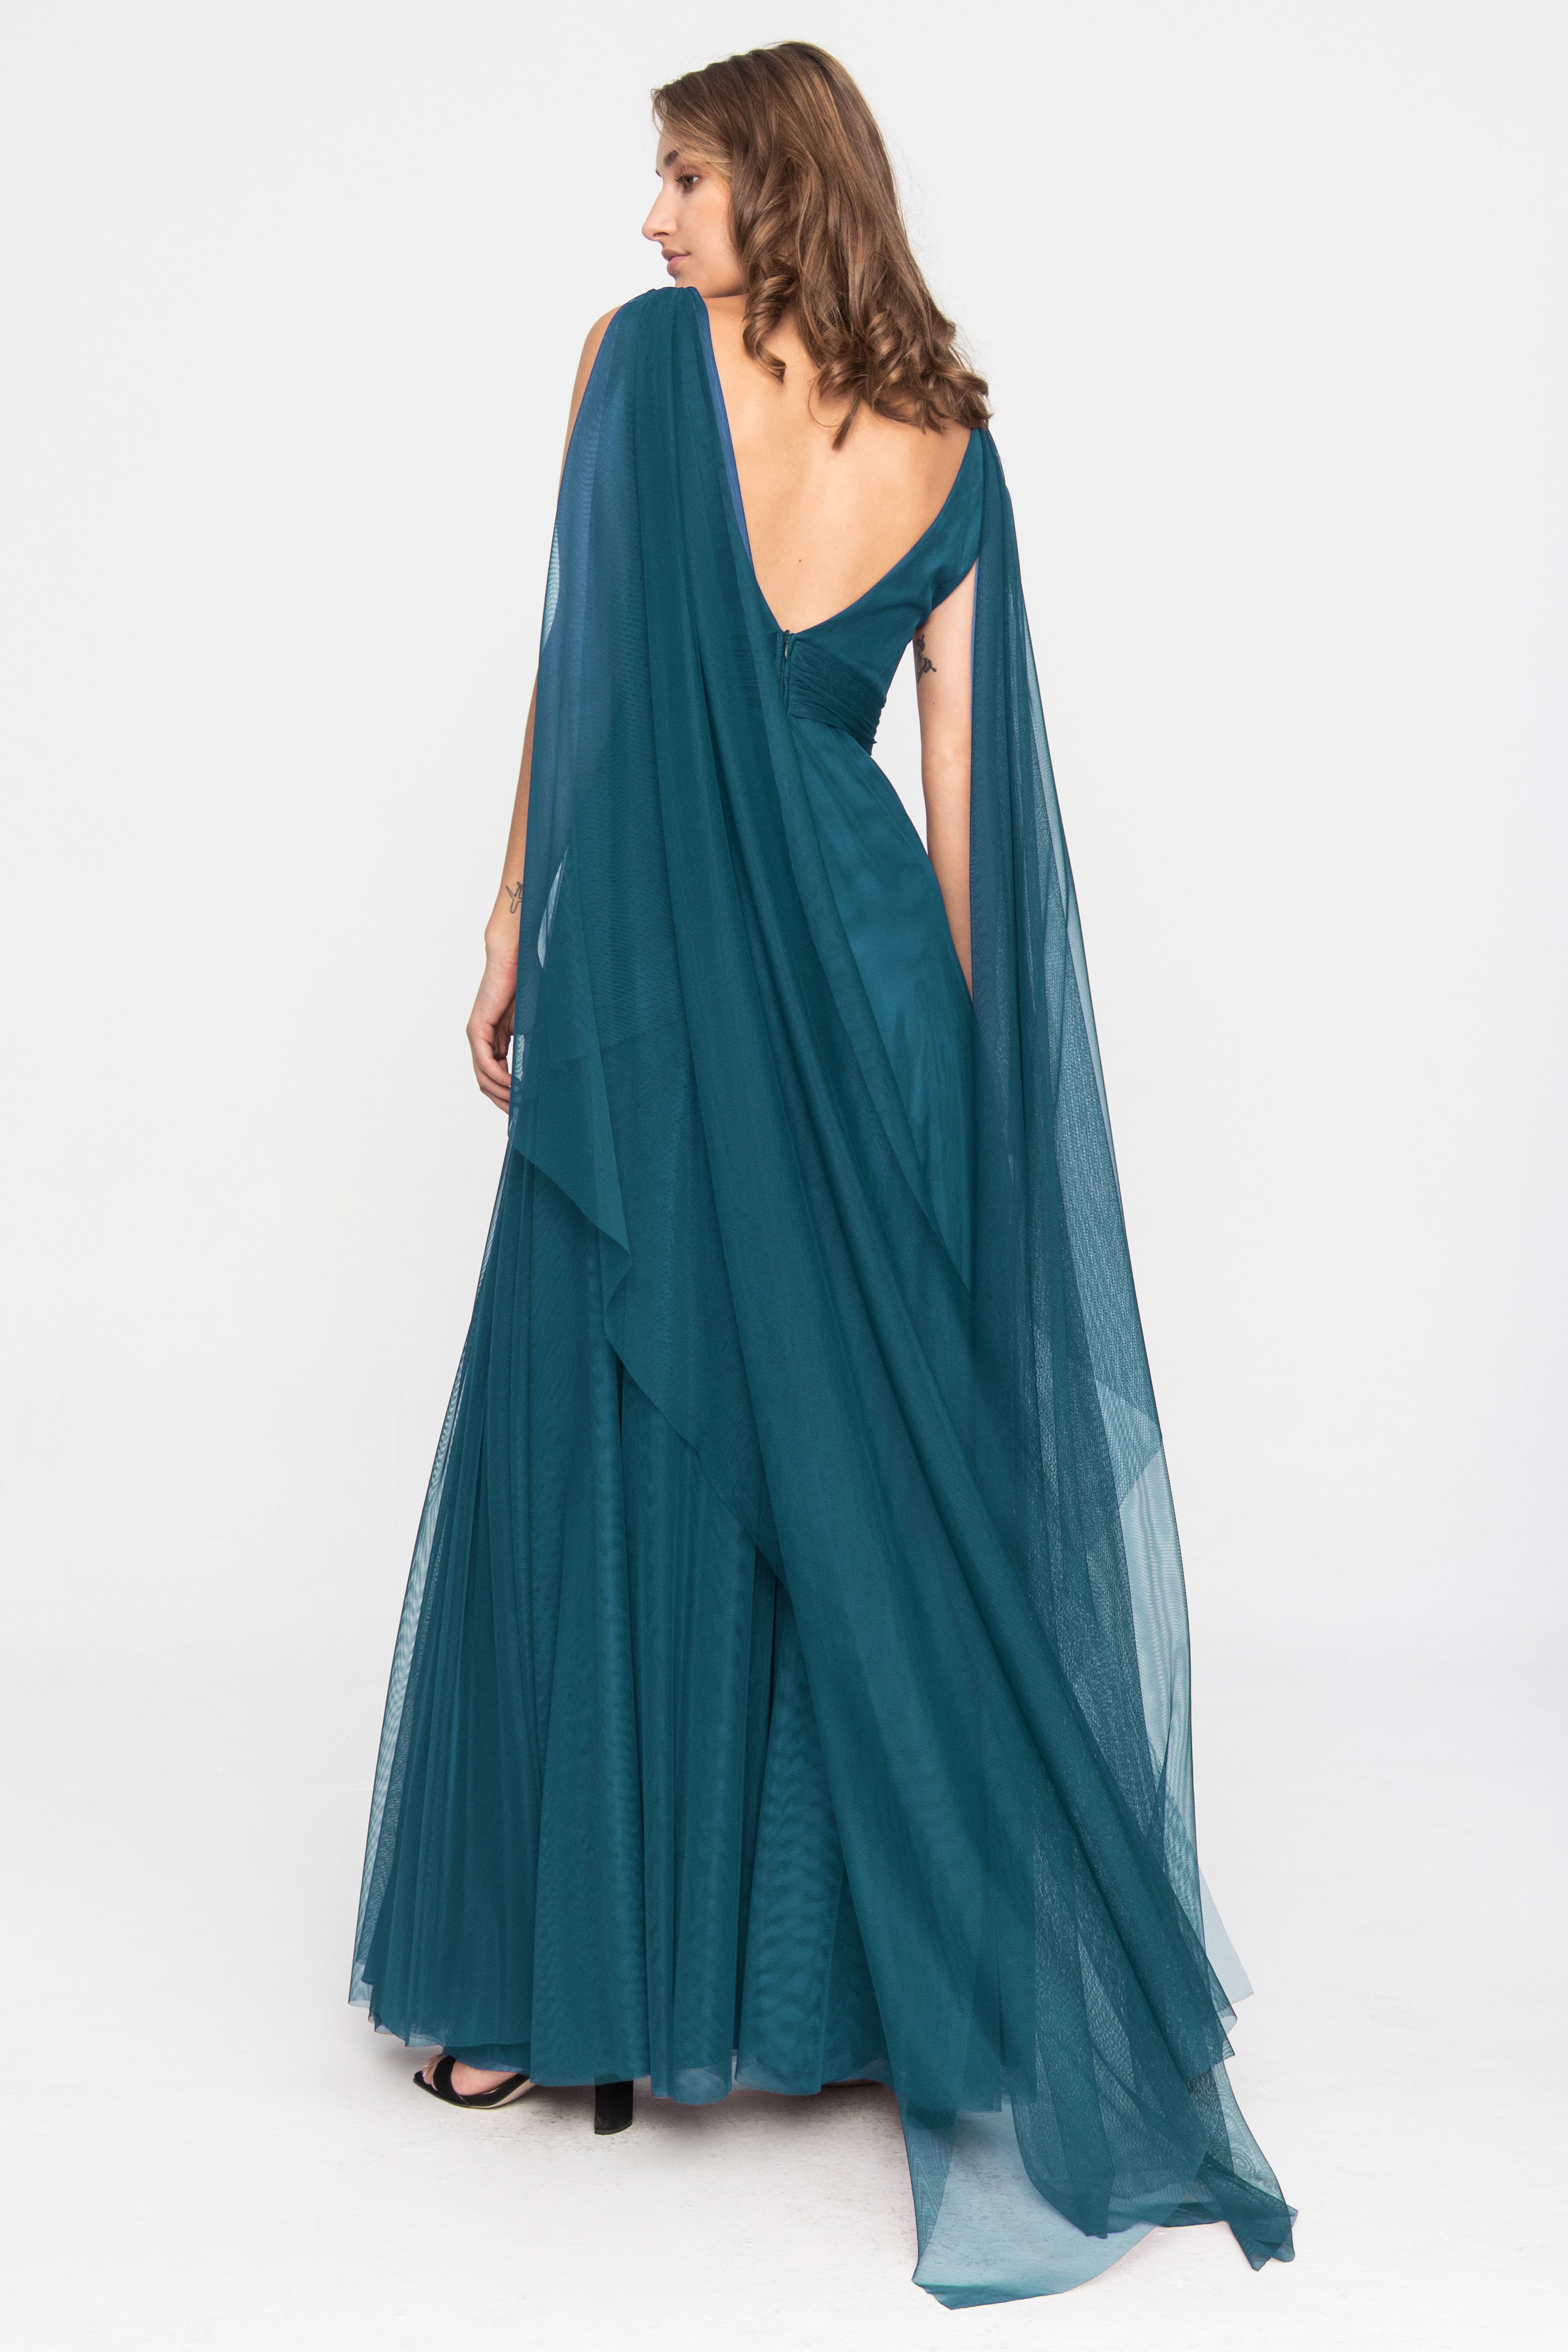 Tiulowa suknia wieczorowa z terakoty w kolorze benzynowego błękitu